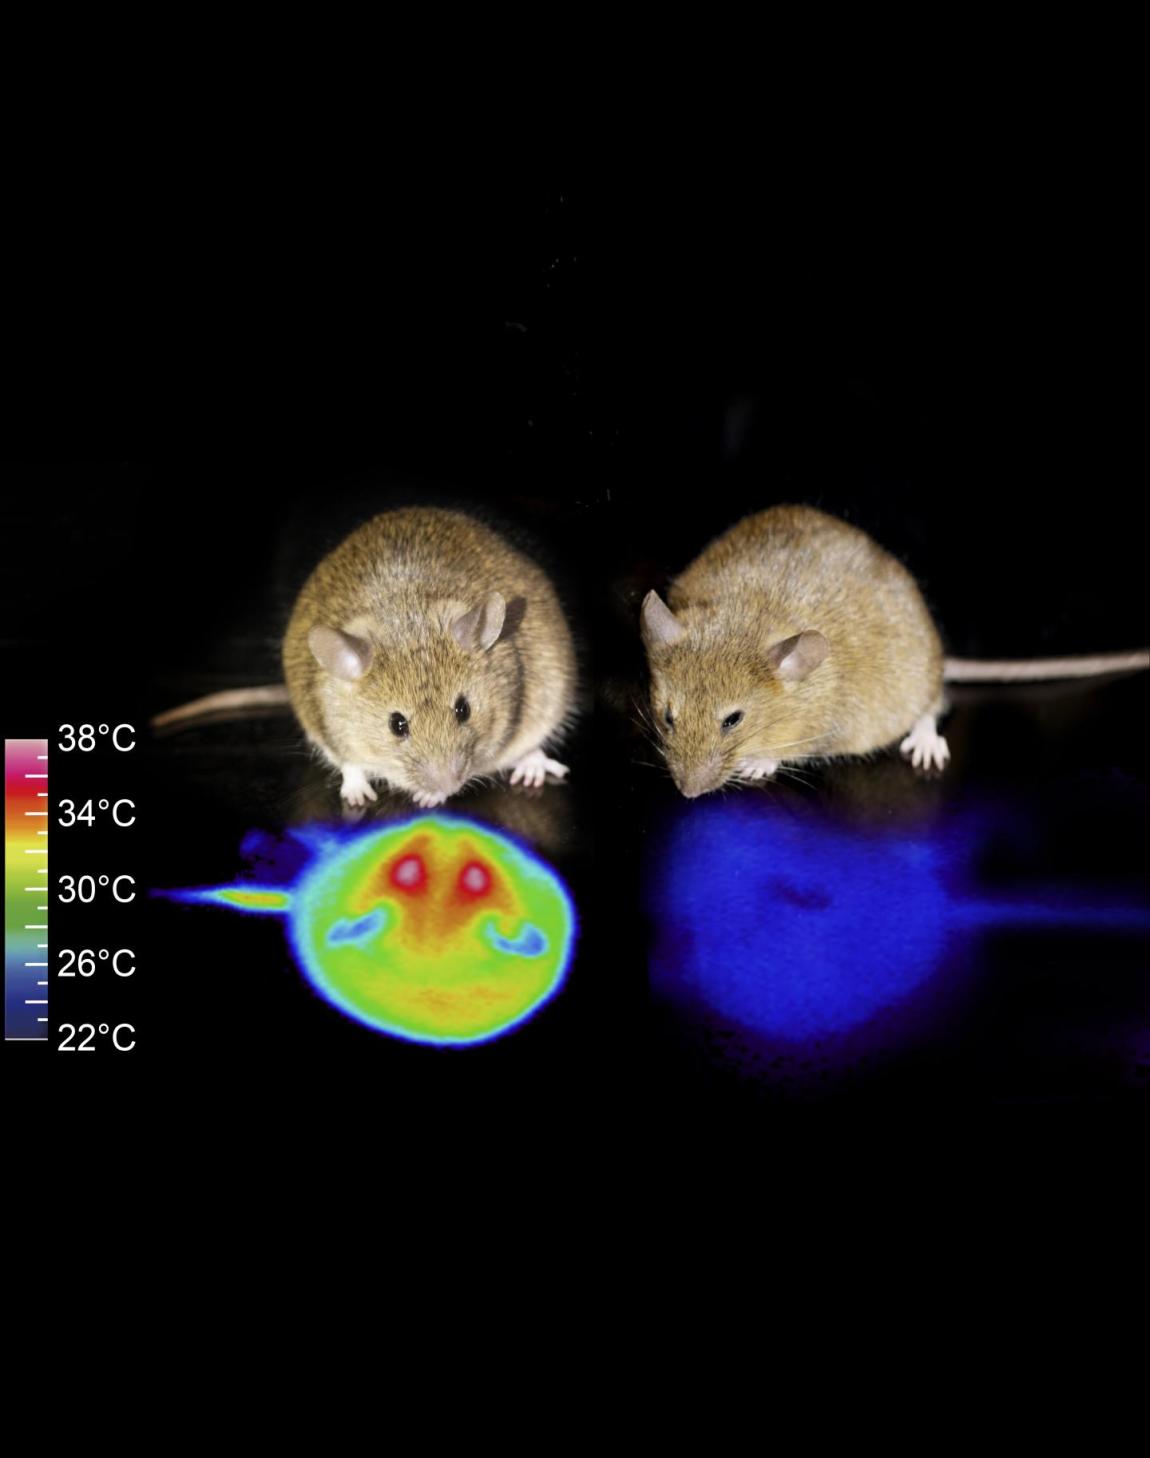 الفأر على اليسار طبيعي بينما الفأر على اليمين دخل في حالة تشبه السبات | صورة من جامعة تسوكوبا